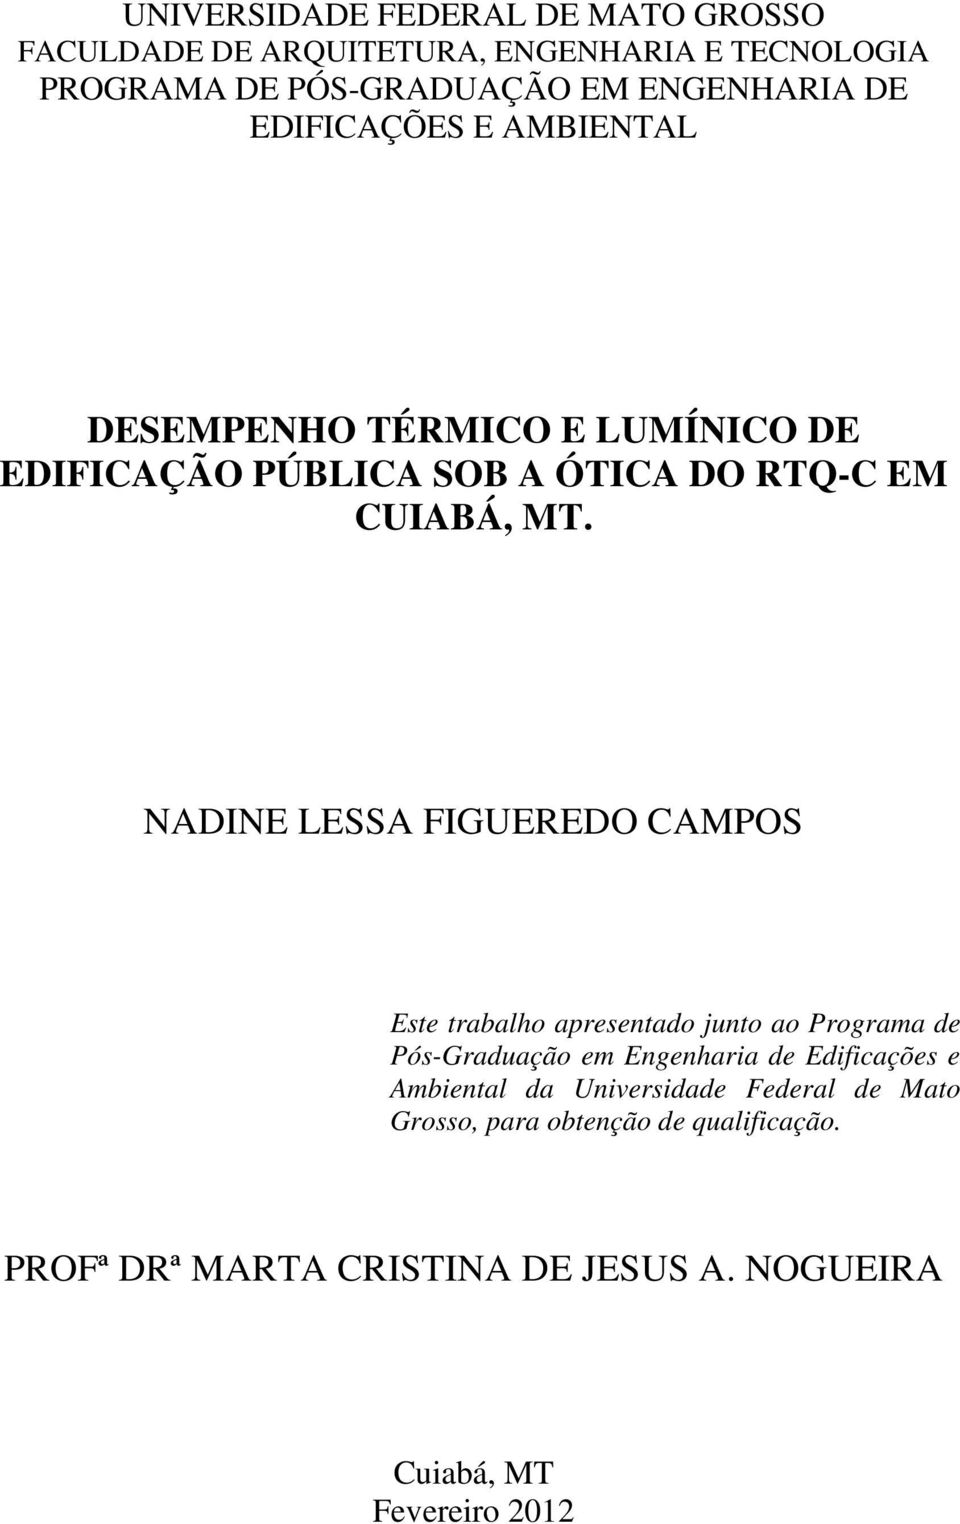 NADINE LESSA FIGUEREDO CAMPOS Este trabalho apresentado junto ao Programa de Pós-Graduação em Engenharia de Edificações e